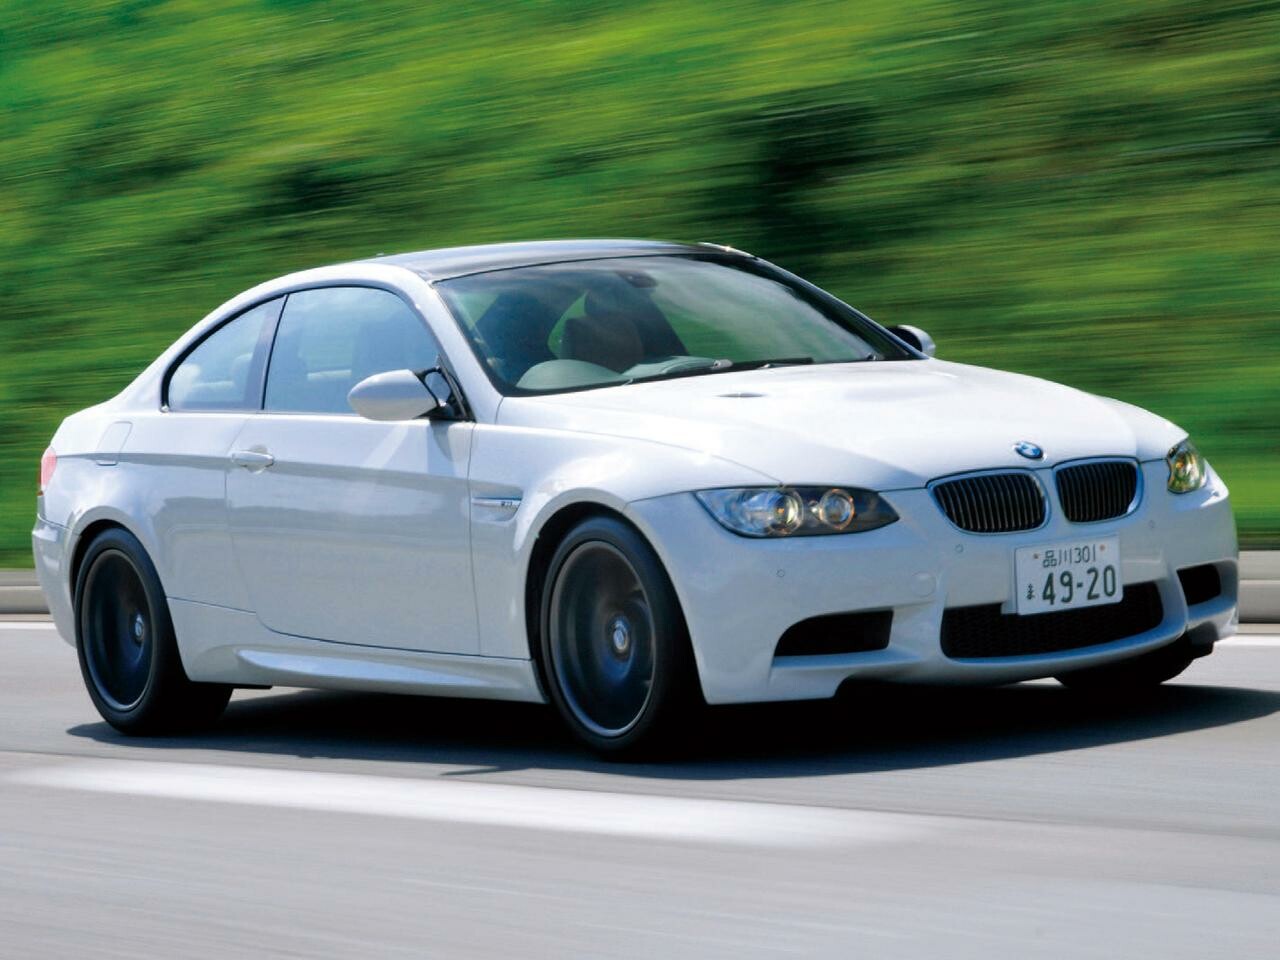 【試乗】4代目E92型BMW M3クーぺはM-DCTトランスミッションを手に入れて走りに磨きを掛けた【10年ひと昔の新車】